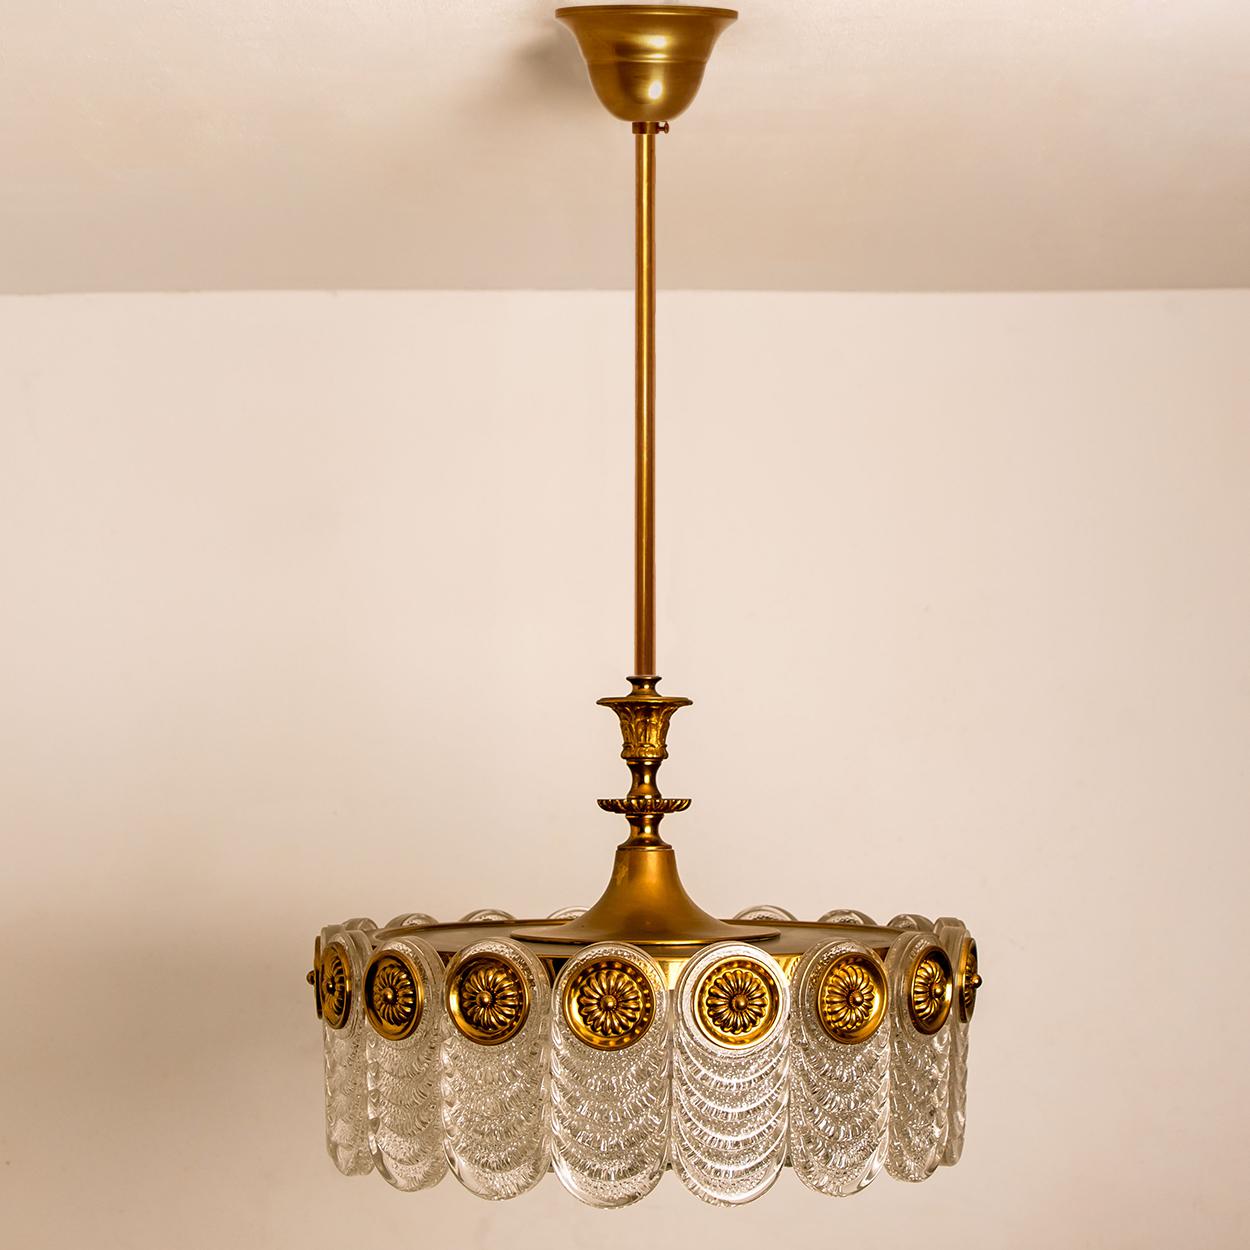 German Brass & Glass Light Fixture, Chandelier by Kaiser Leuchten, 1960s For Sale